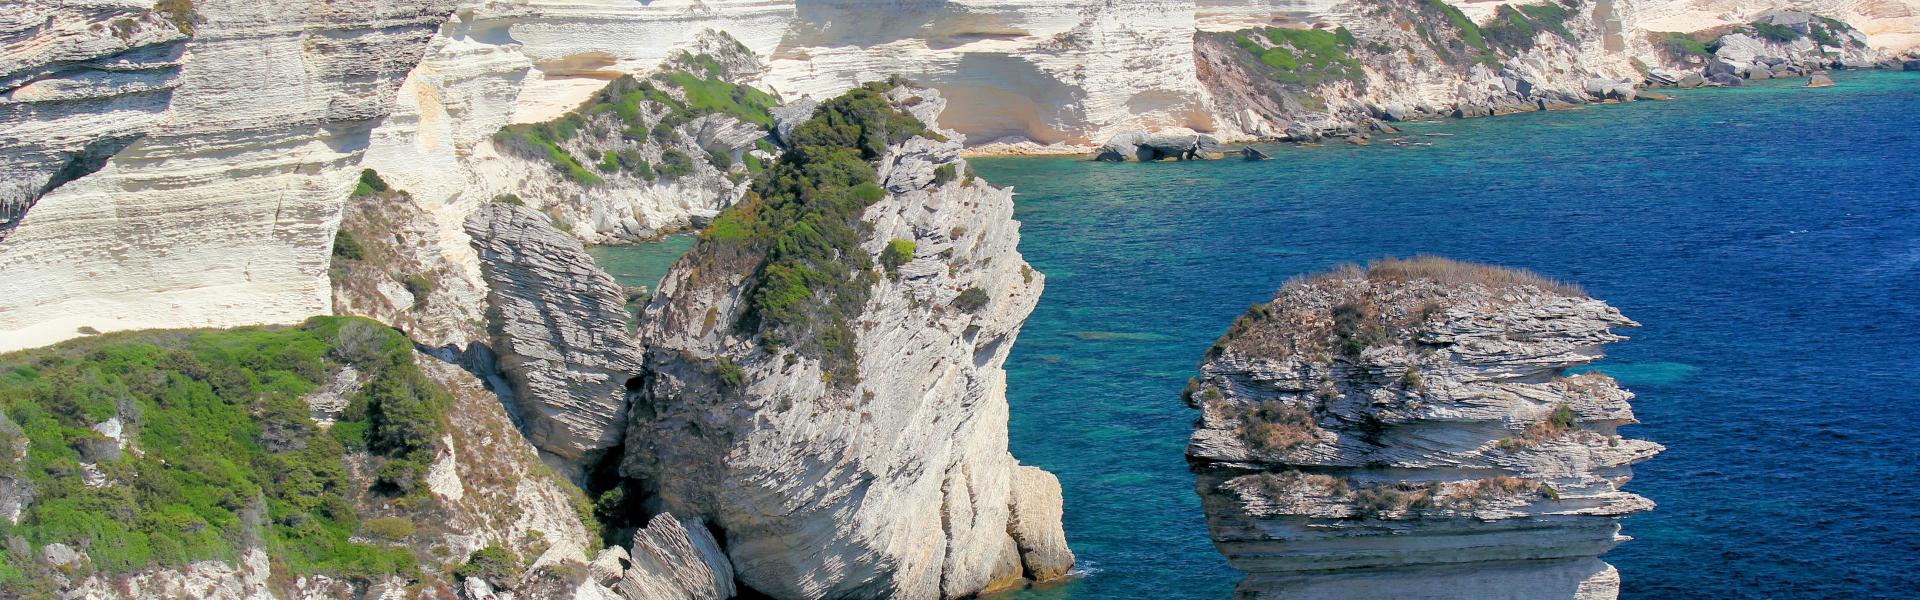 Location de vacances à Conca - Corse-du-Sud - Amivac